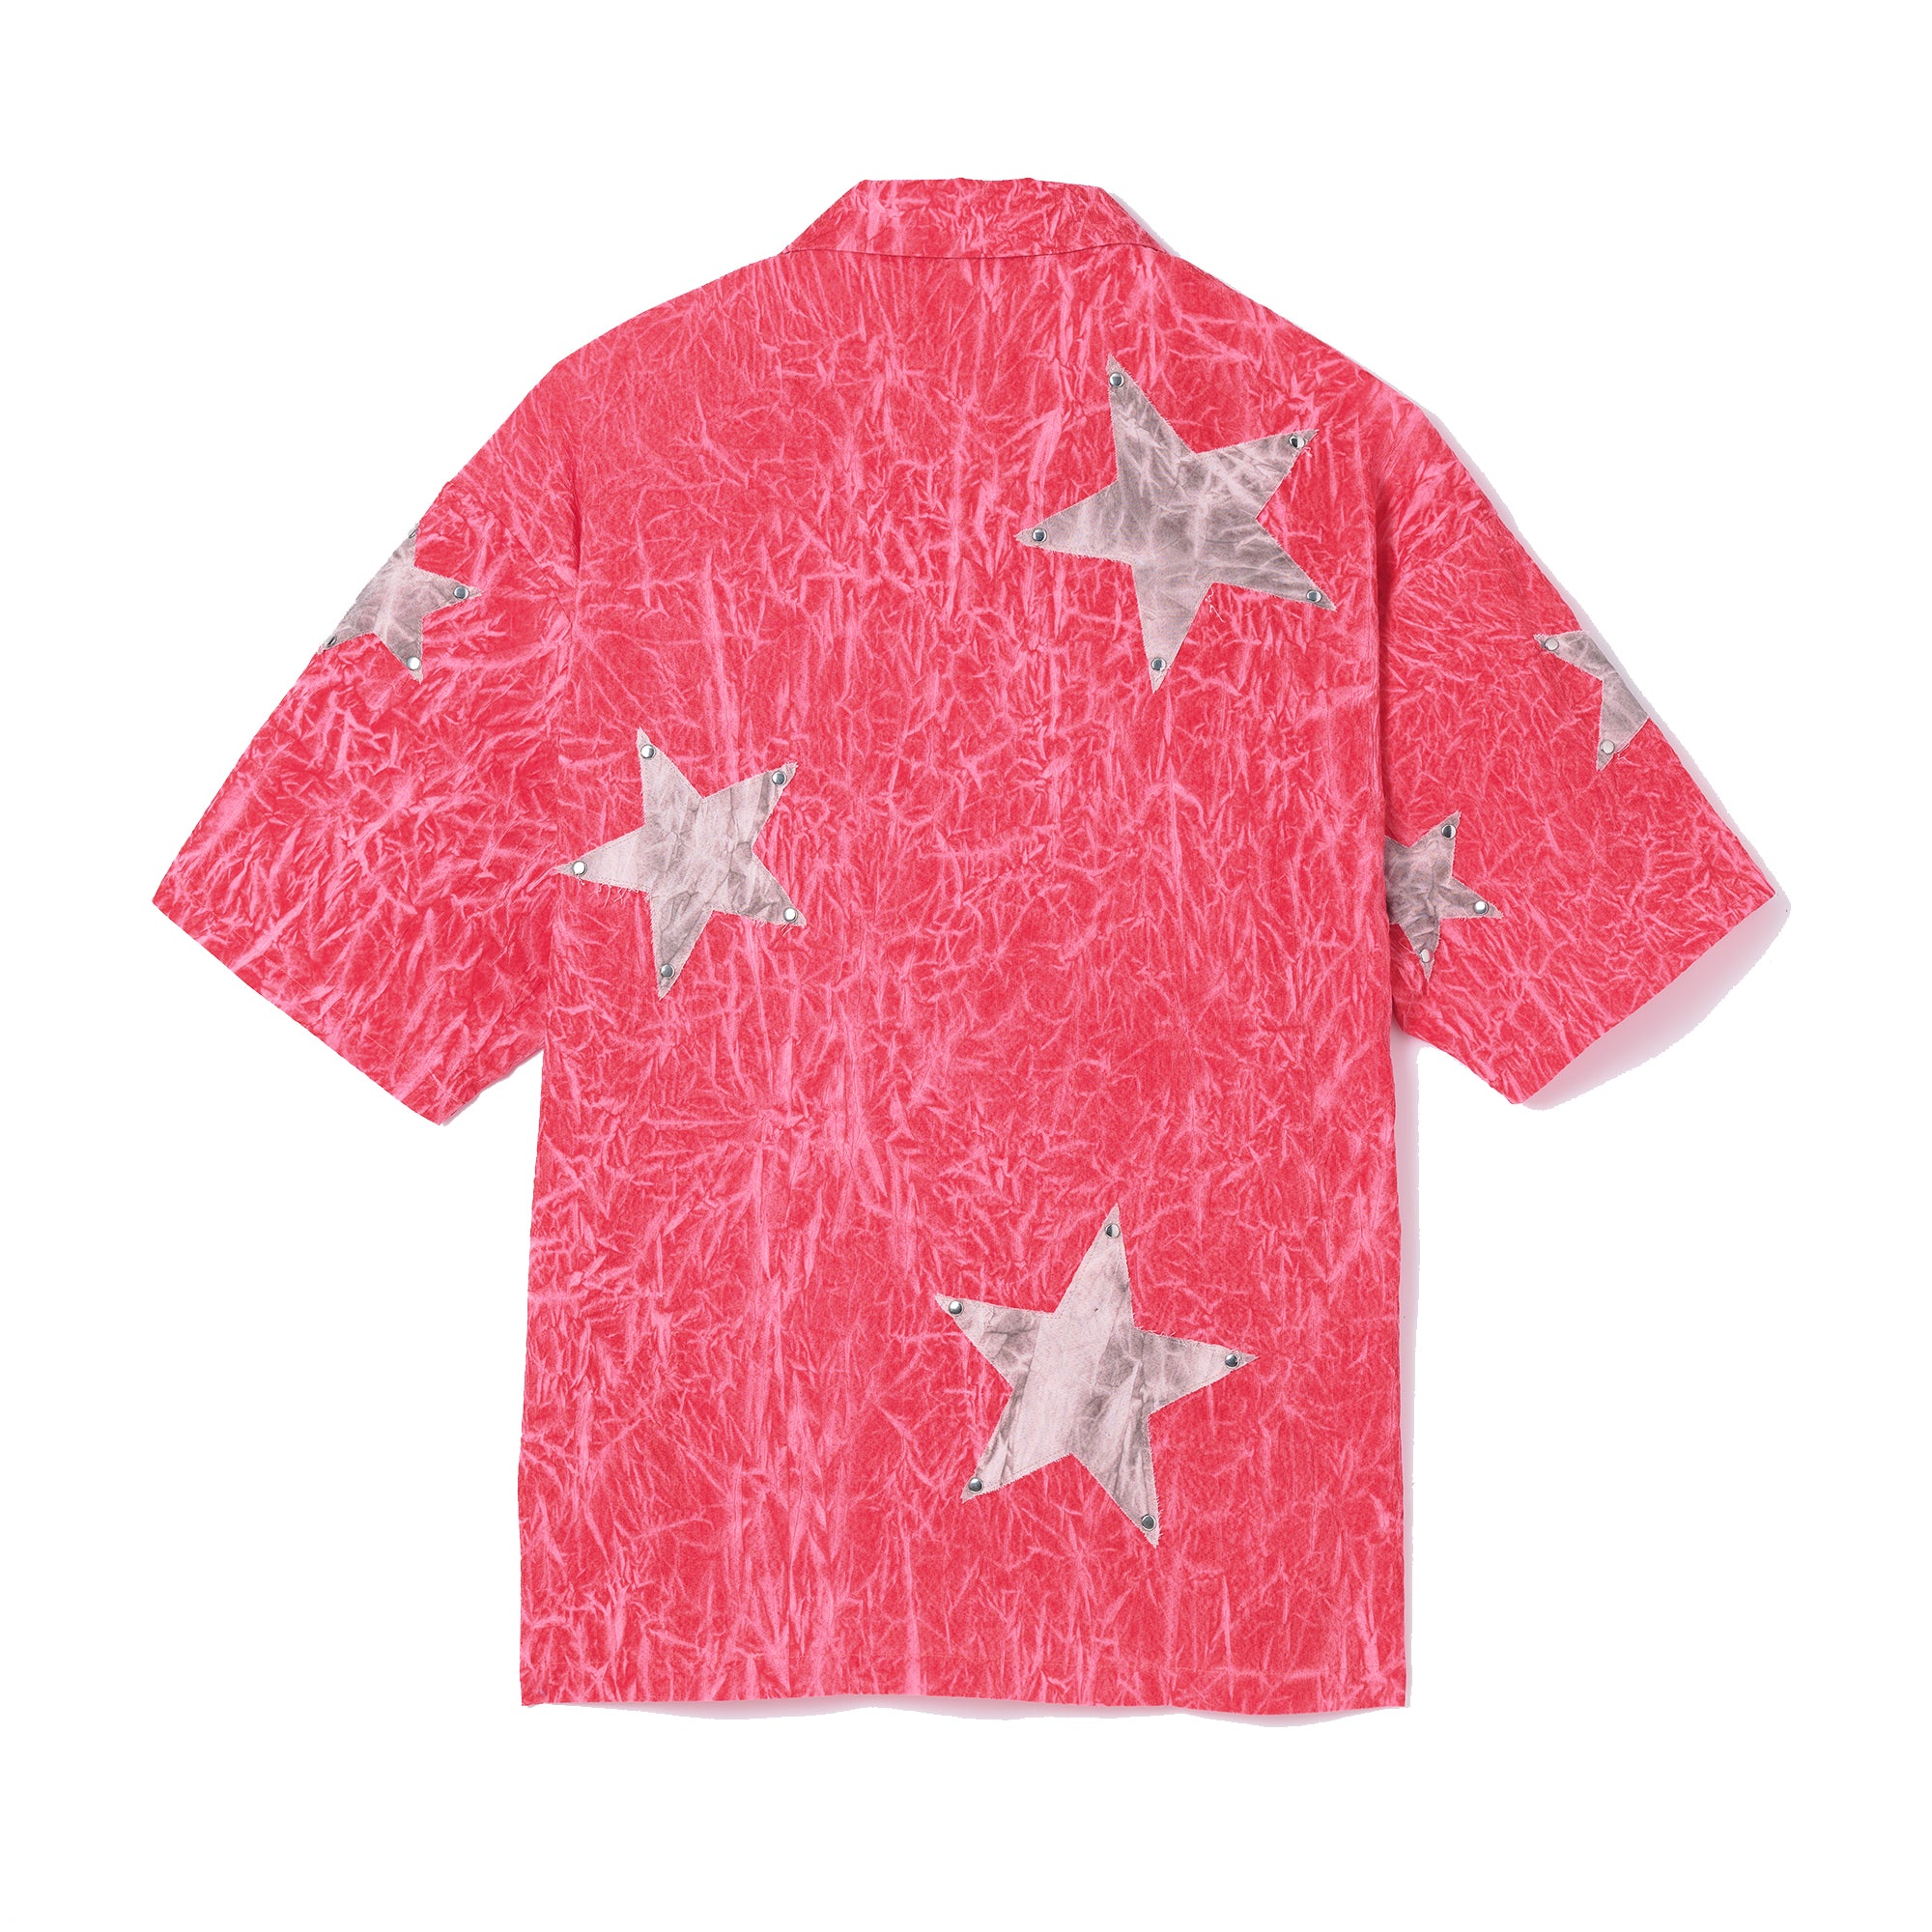 crease dye star shirt